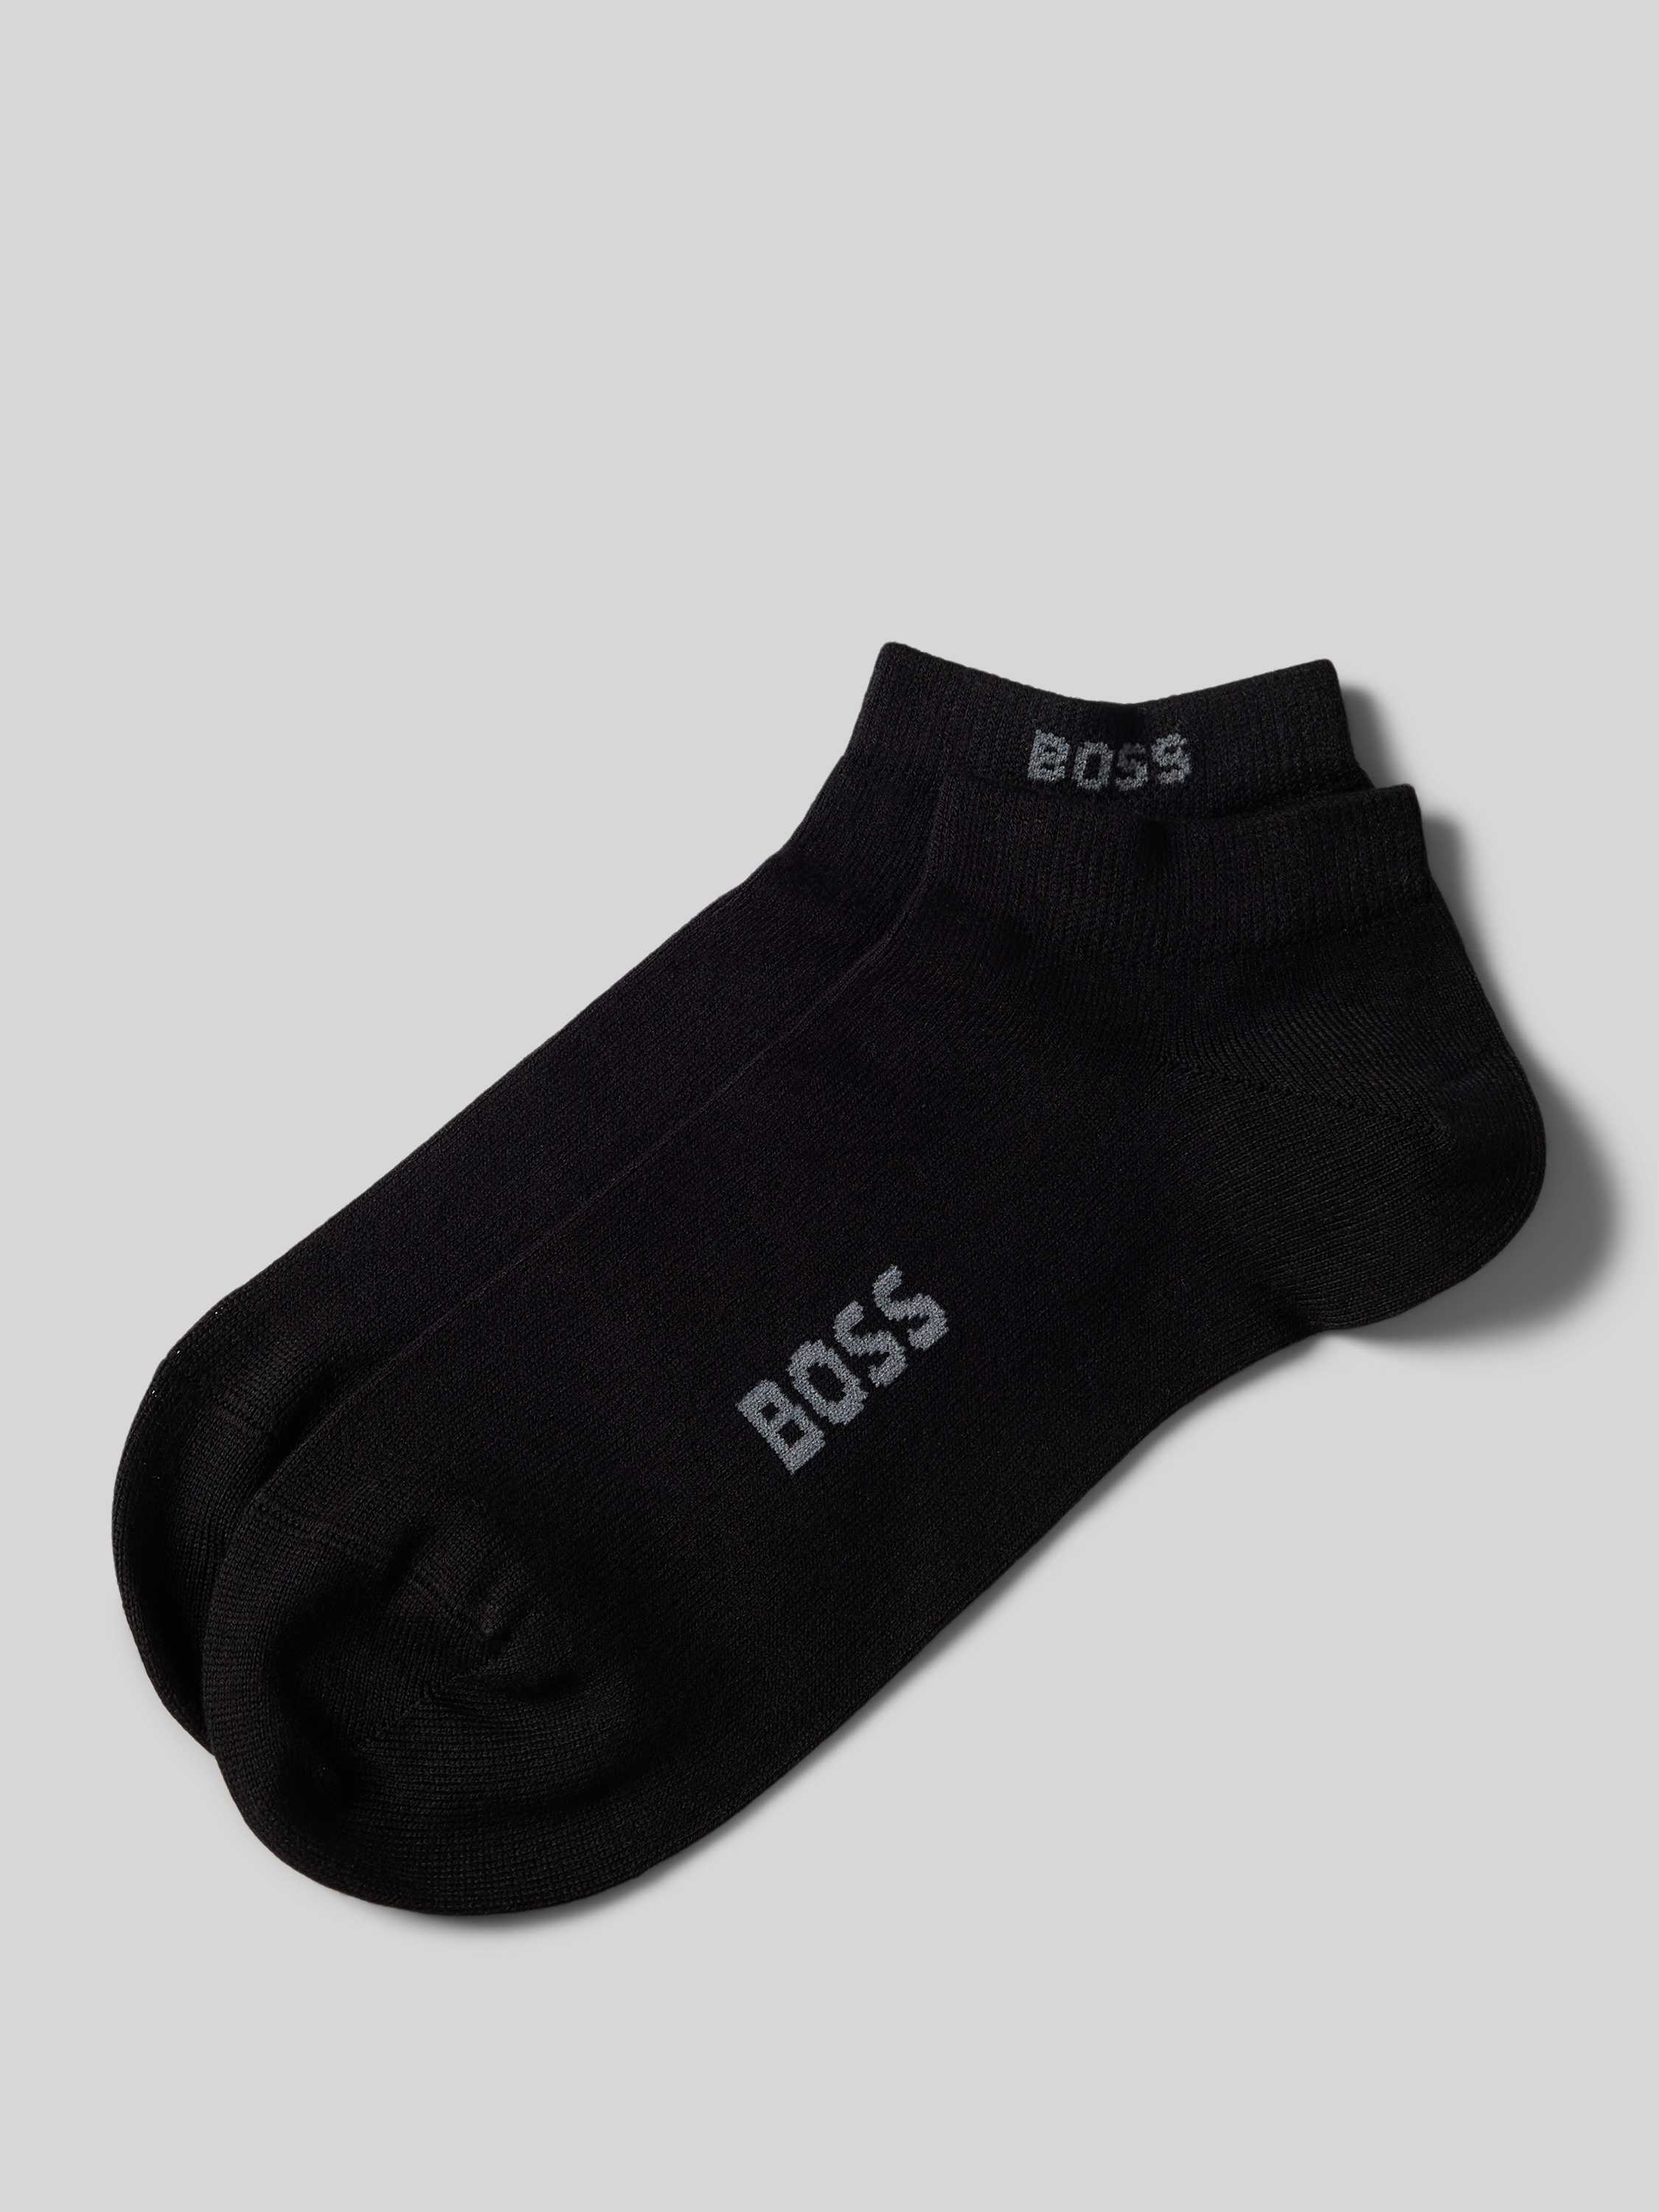 Boss Sokken met labelprint in een set van 2 paar